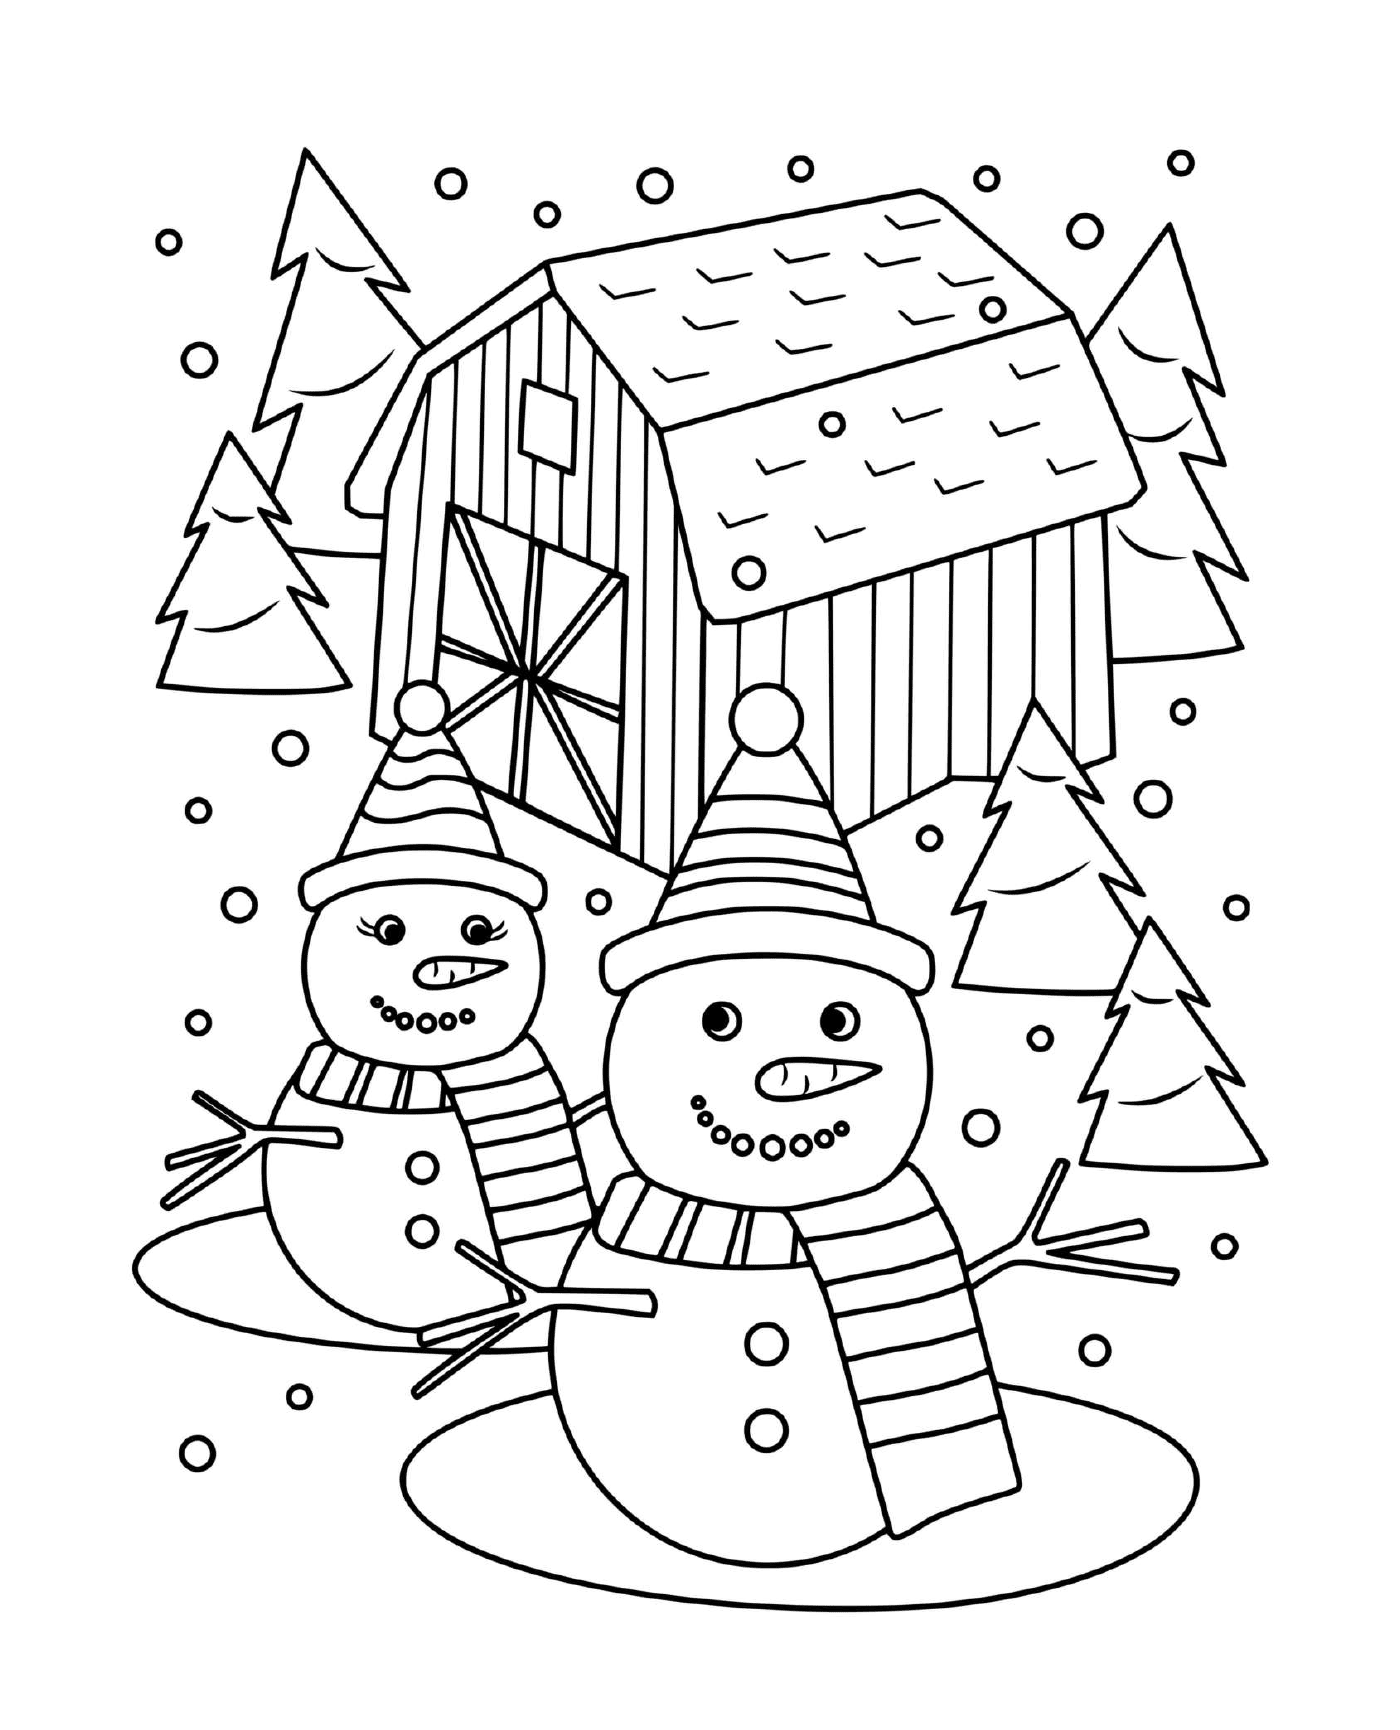   Un bonhomme de neige et une madame neige entourés de sapins 